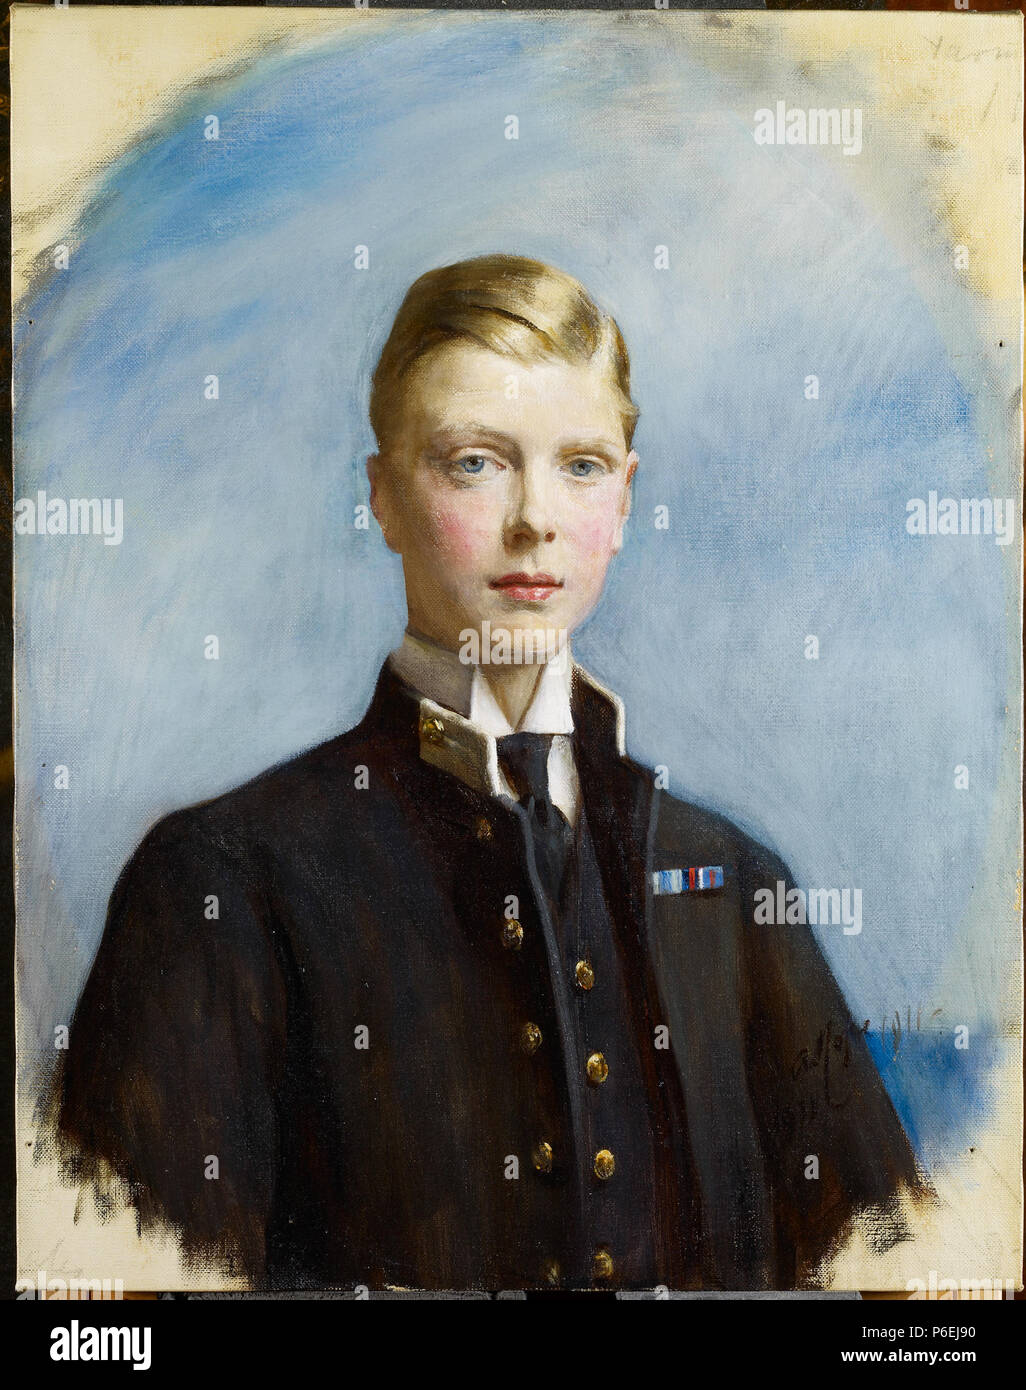 Inglés: Retrato del Rey Eduardo VIII, cuando el Príncipe de Gales . 1911 6 Arthur Stockdale Cope - El Rey Eduardo VIII cuando el Príncipe de Gales Foto de stock